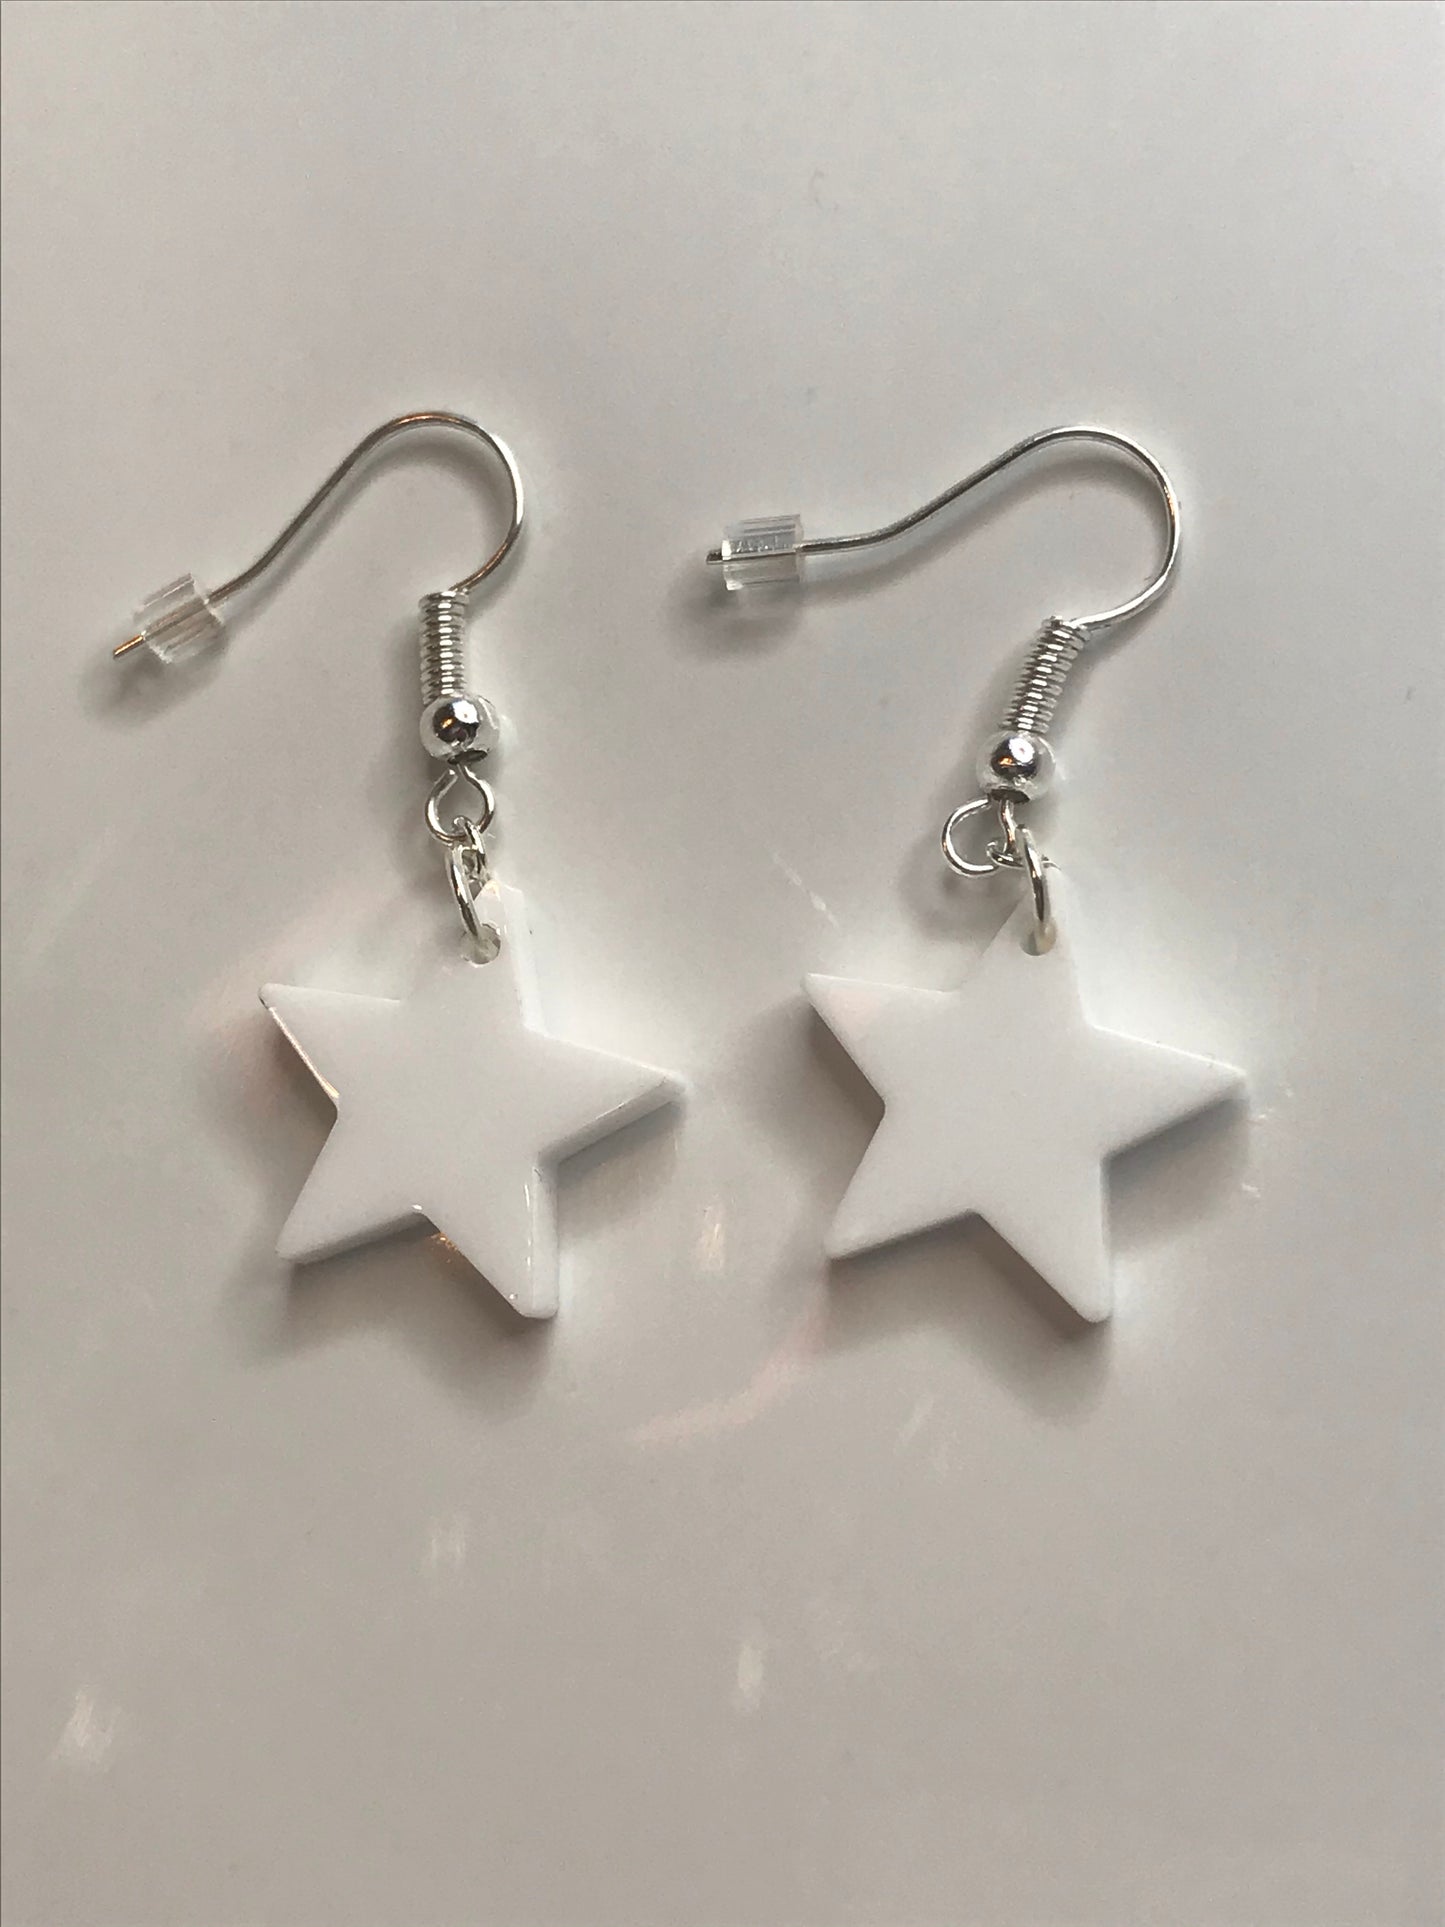 Black Perspex Star Earrings